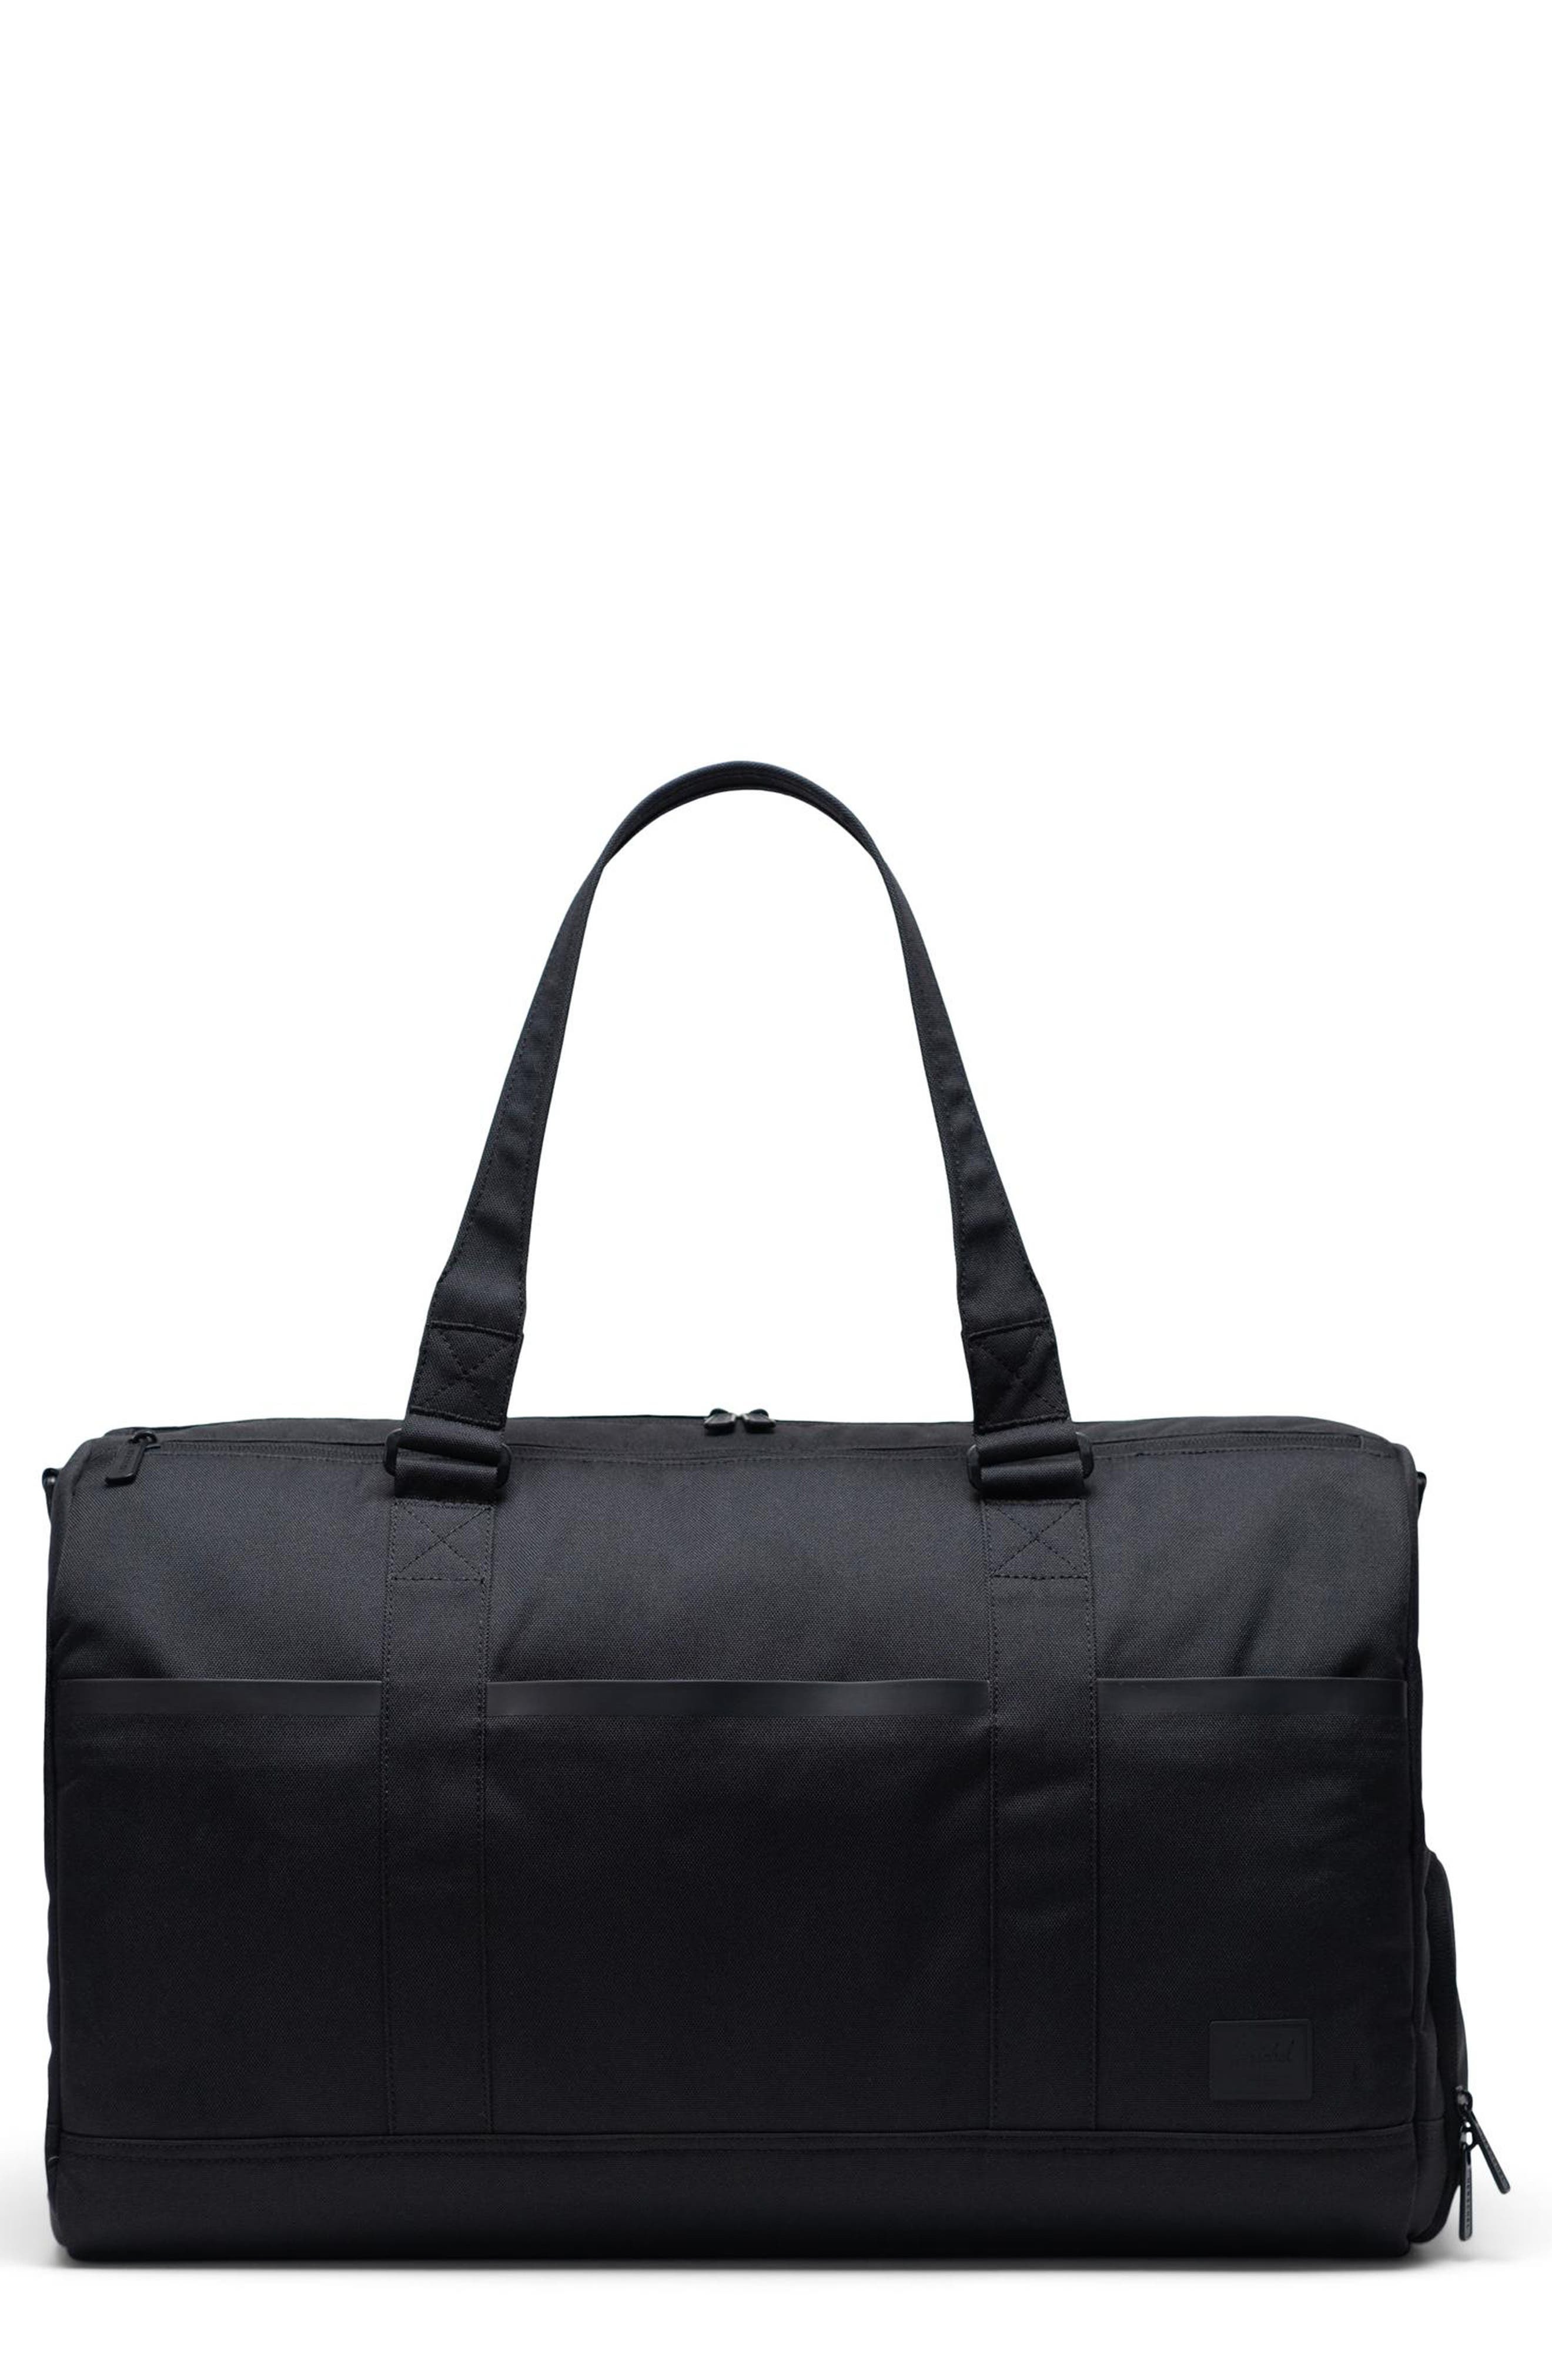 Herschel Supply Co. Tech Duffle Bag, $139 | Nordstrom | Lookastic